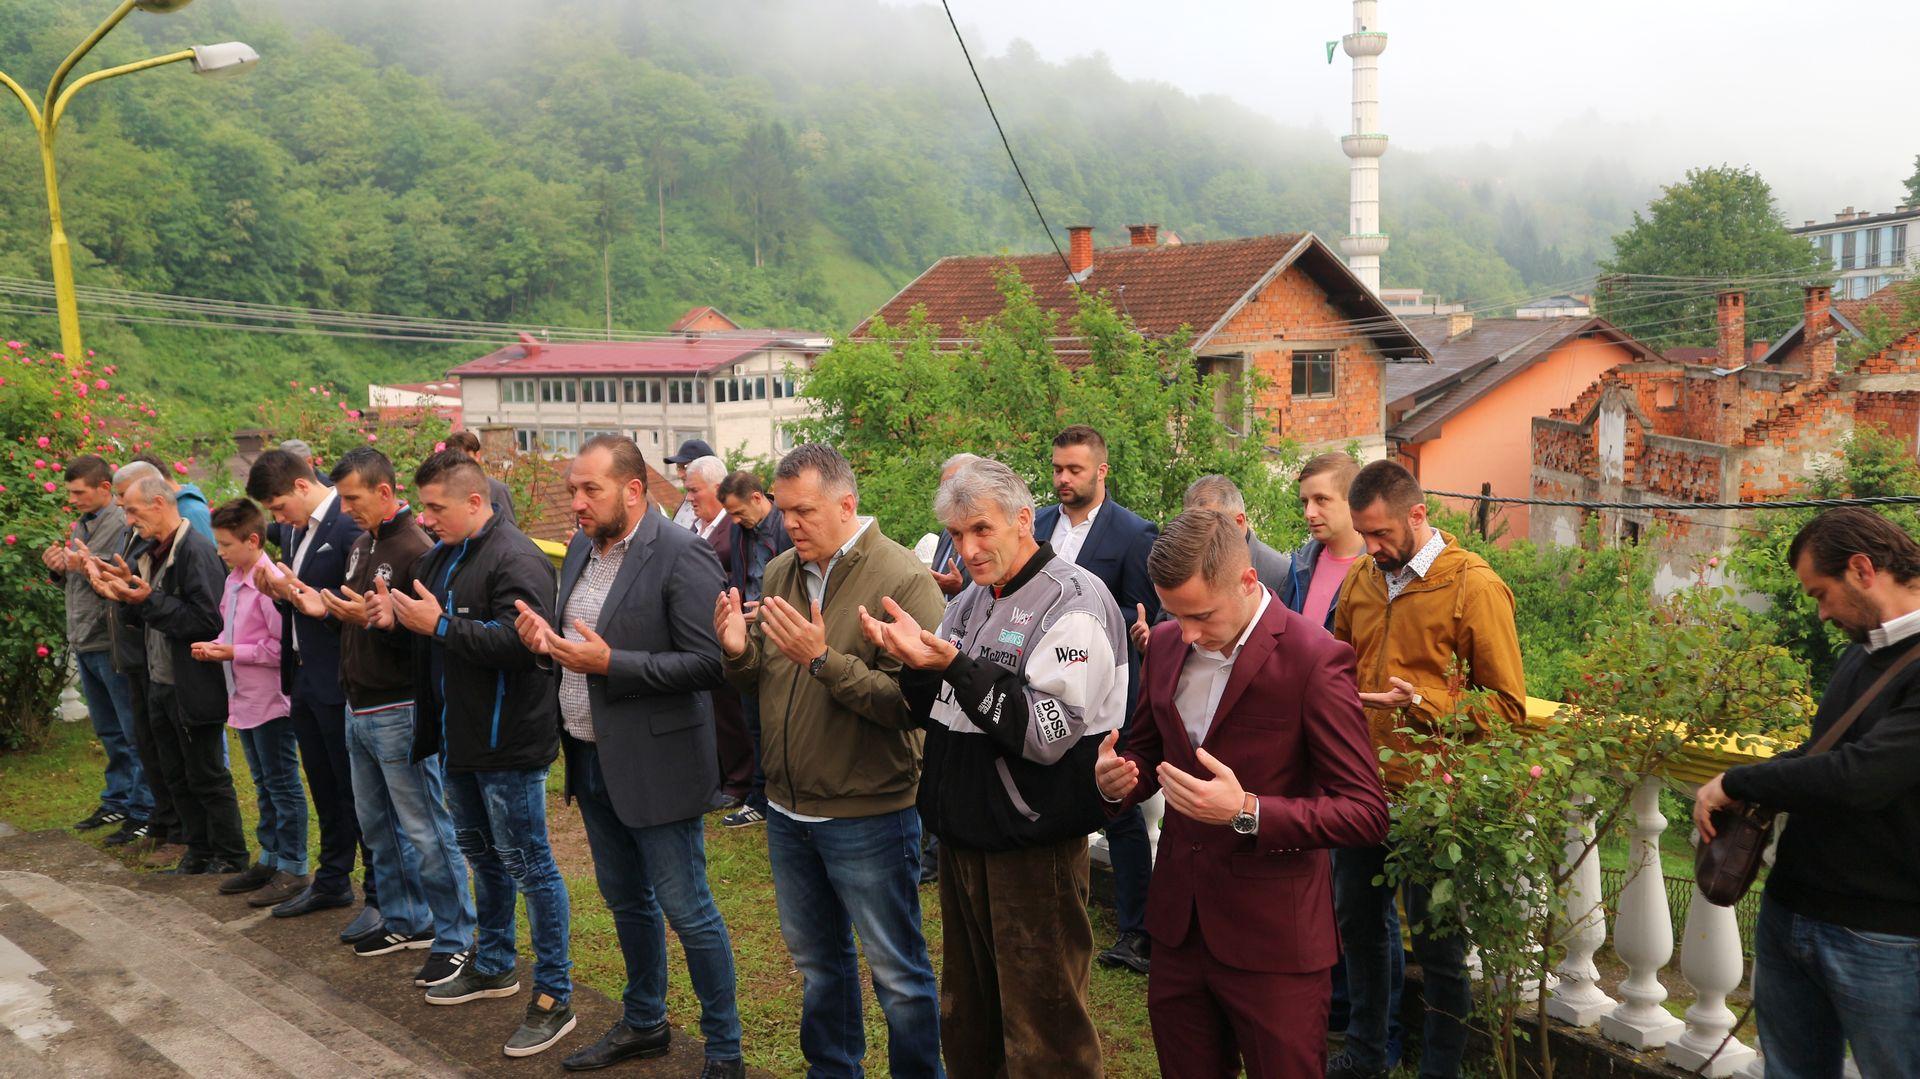 S bajramske svečanosti u Srebrenici - Avaz